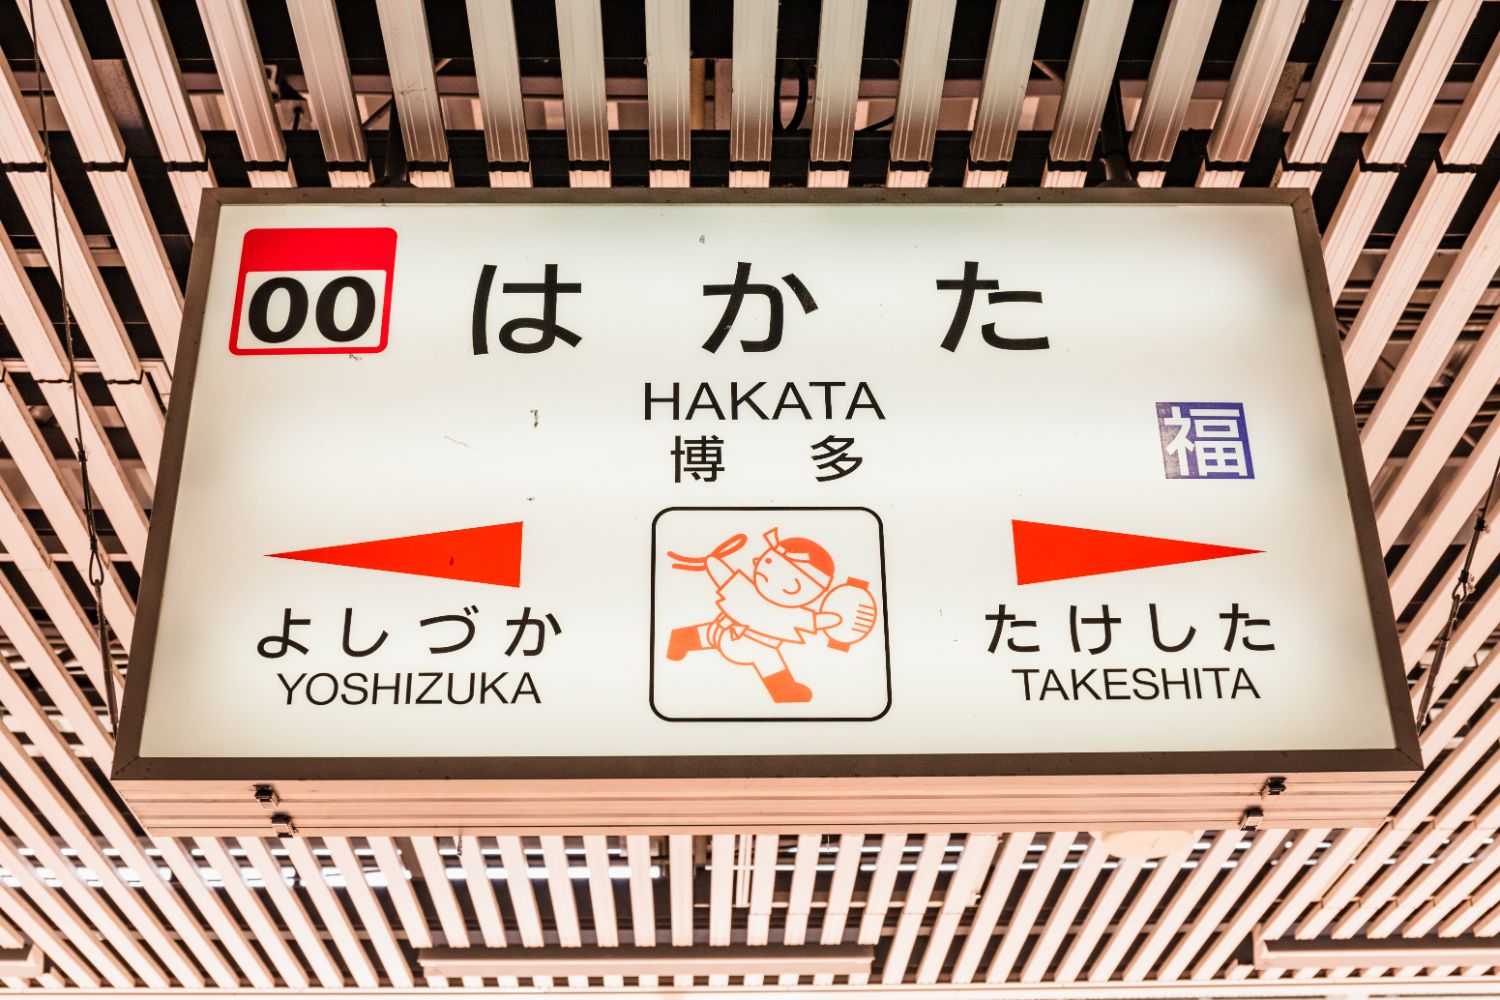 東京から いちばん遠い新幹線の終着駅 博多 には何がある なぜ駅名が 福岡 じゃないの ニコニコニュース